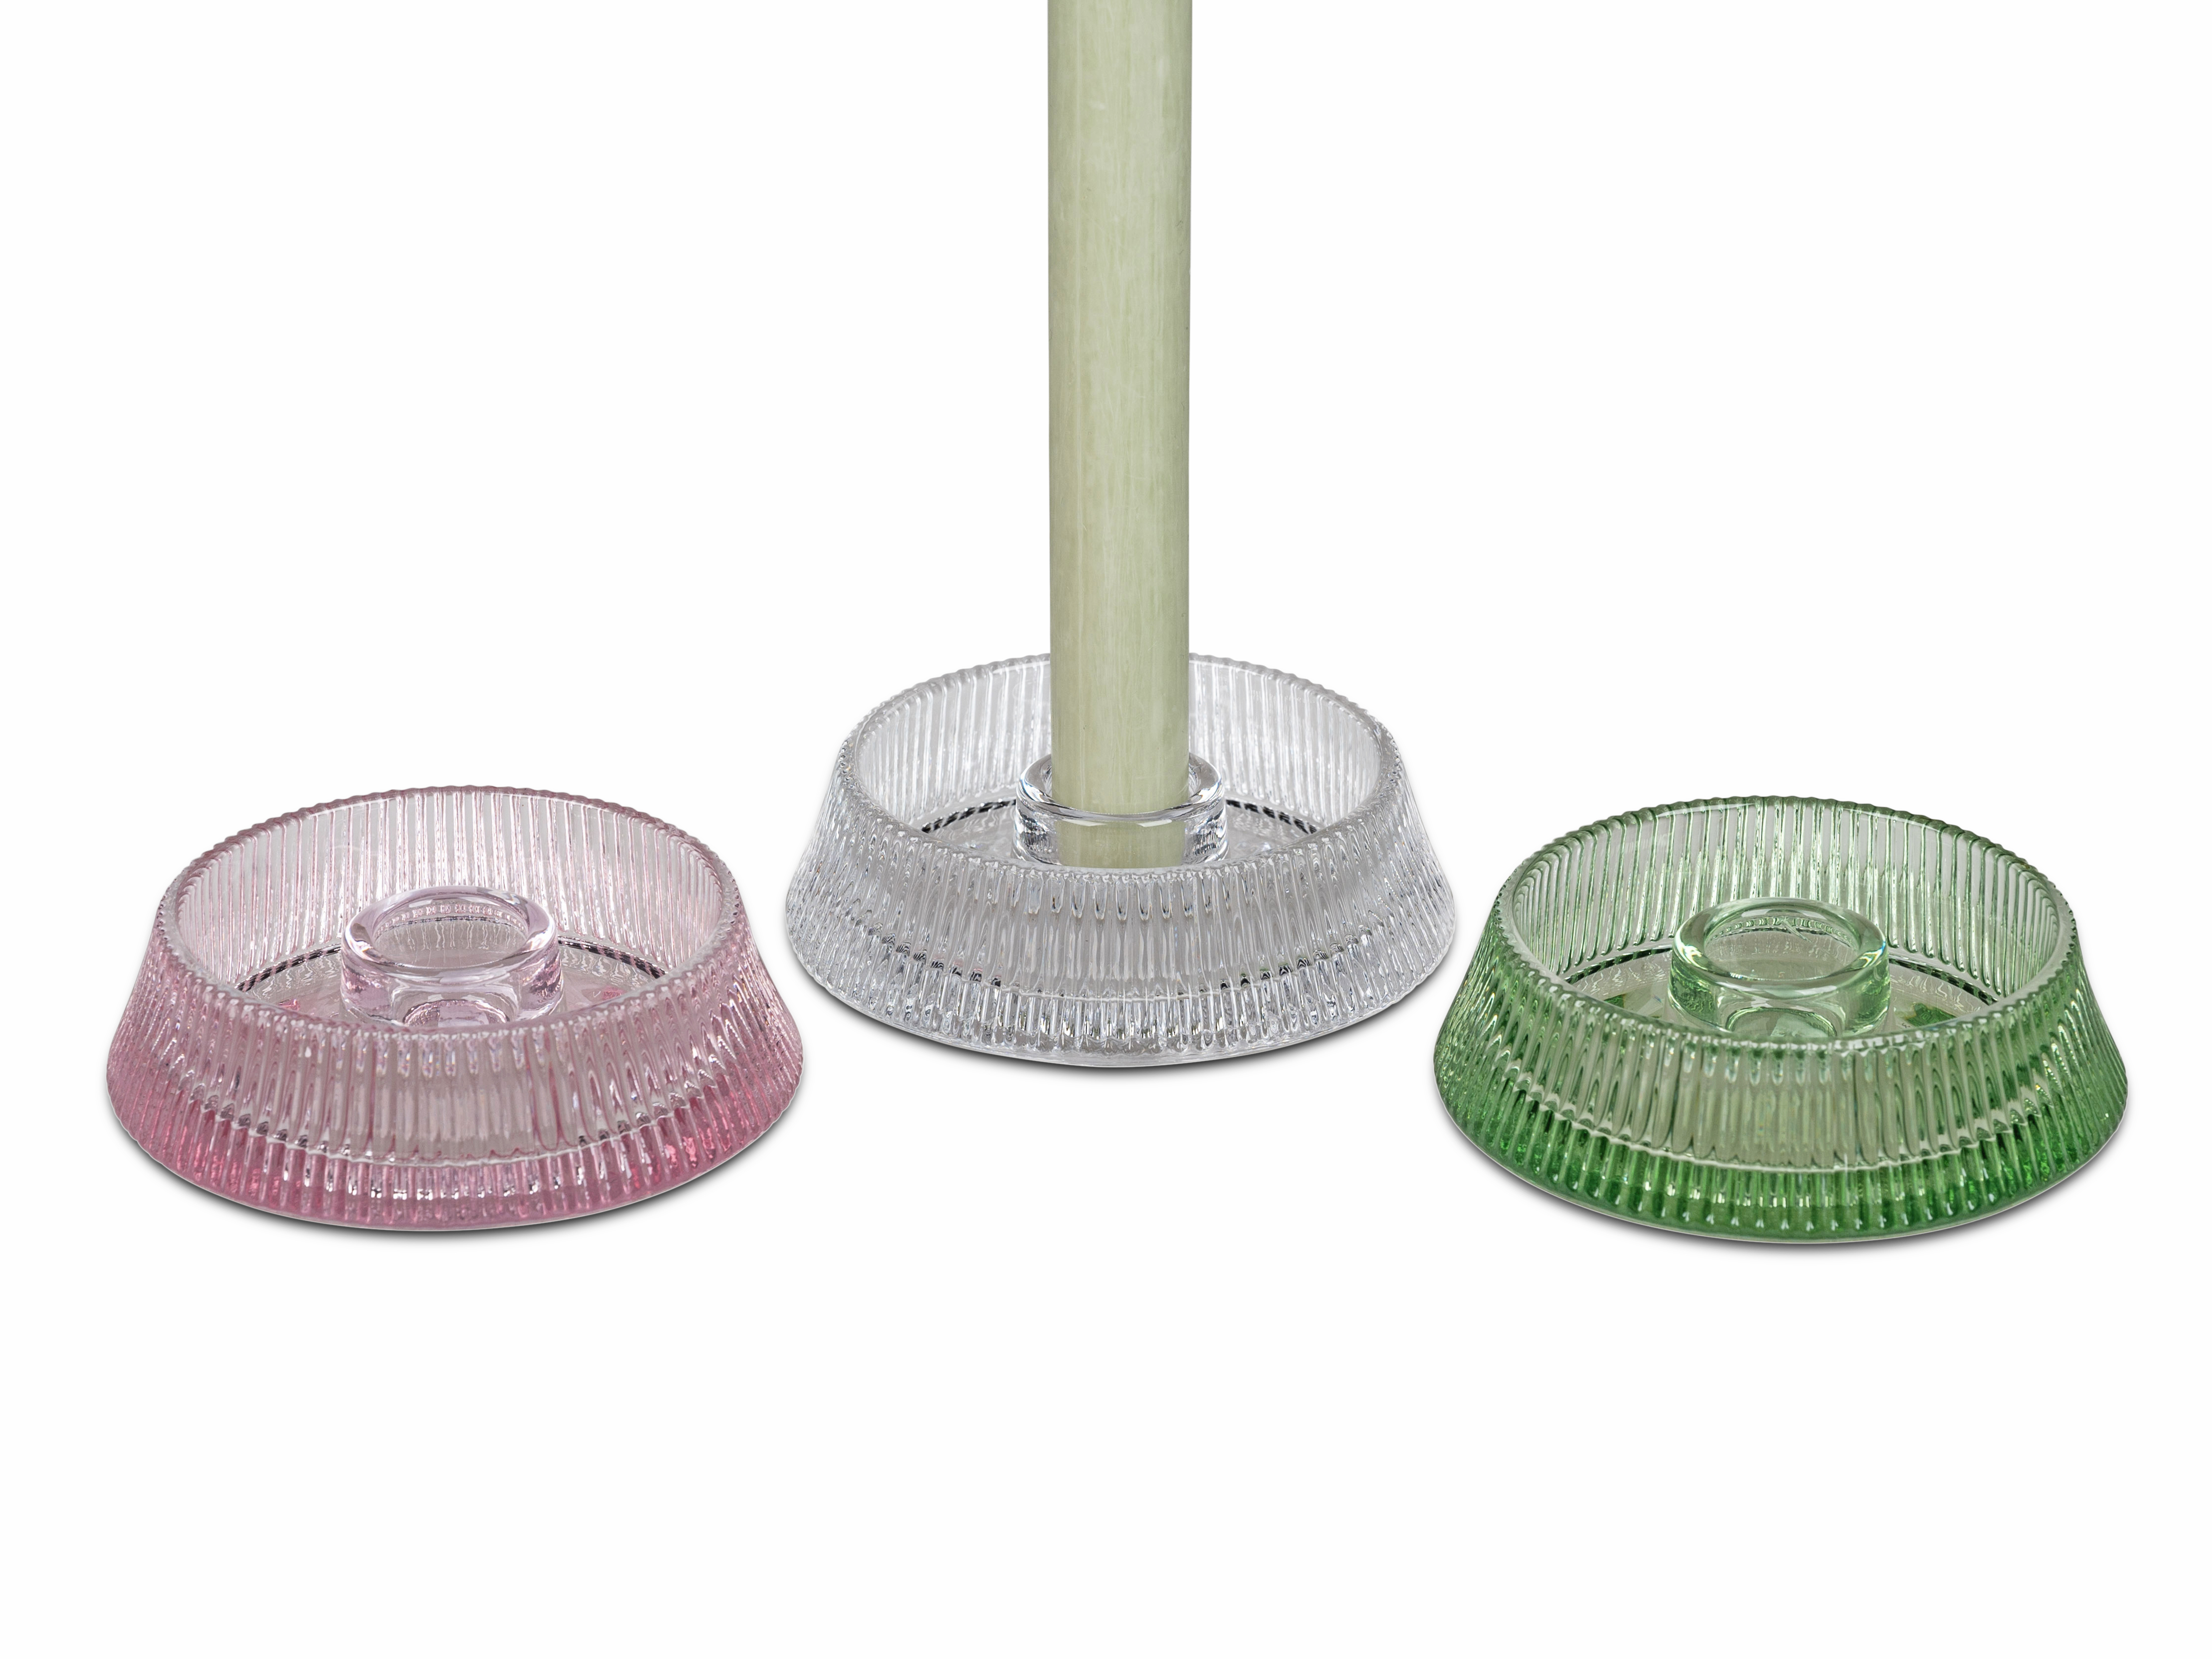 Leuchter Ø 11cm flach rosa für Stabkerzen Kerzenleuchter Teelichthalter aus Glas formano F24